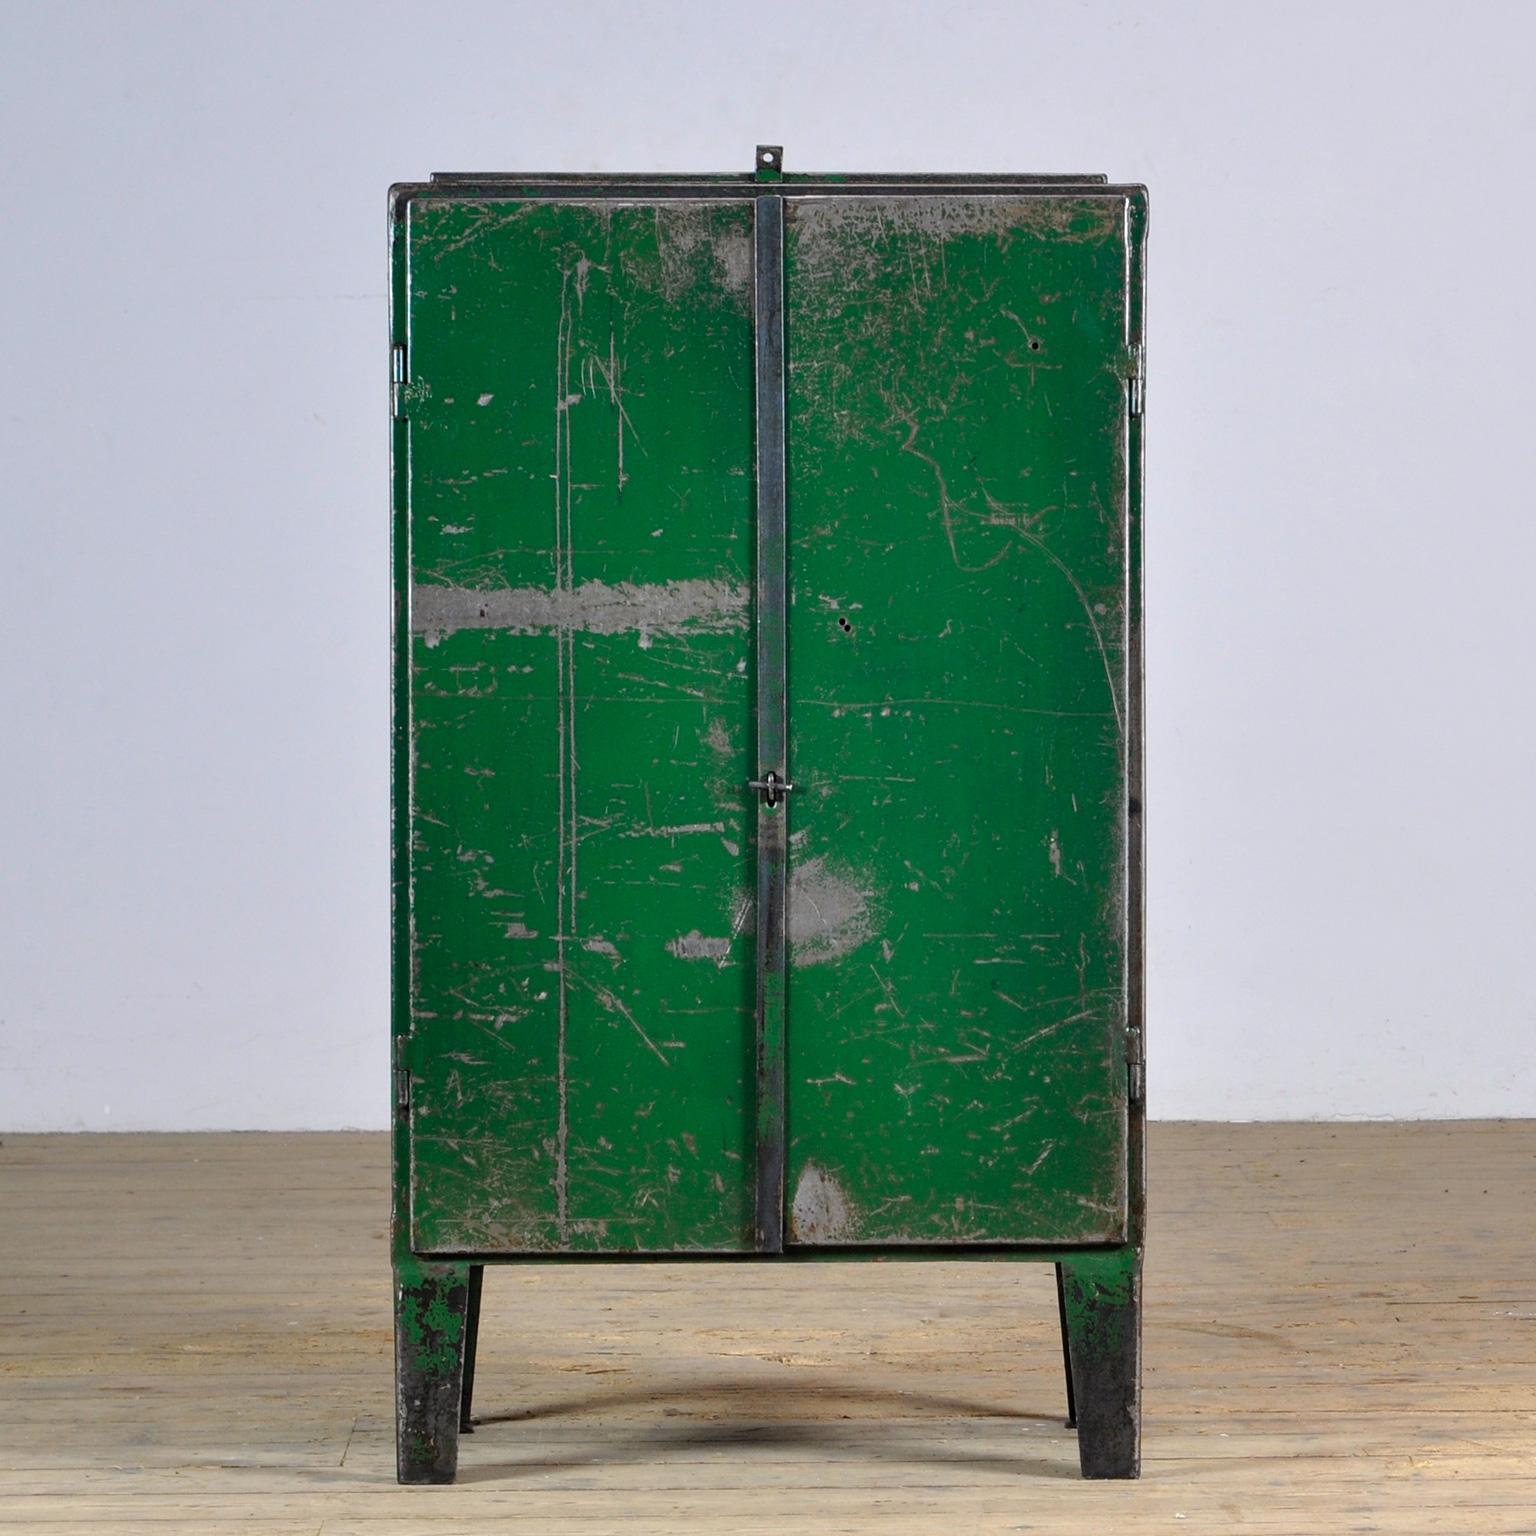 Industrielles Sideboard aus Eisen aus den 1960er Jahren im Vintage-Zustand. Mit einem Ventil an der Spitze. Ein Regal und zwei Schubladen auf der Innenseite. Gegen Rost behandelt und mit einer transparenten Lackierung versehen. Die Oberfläche ist